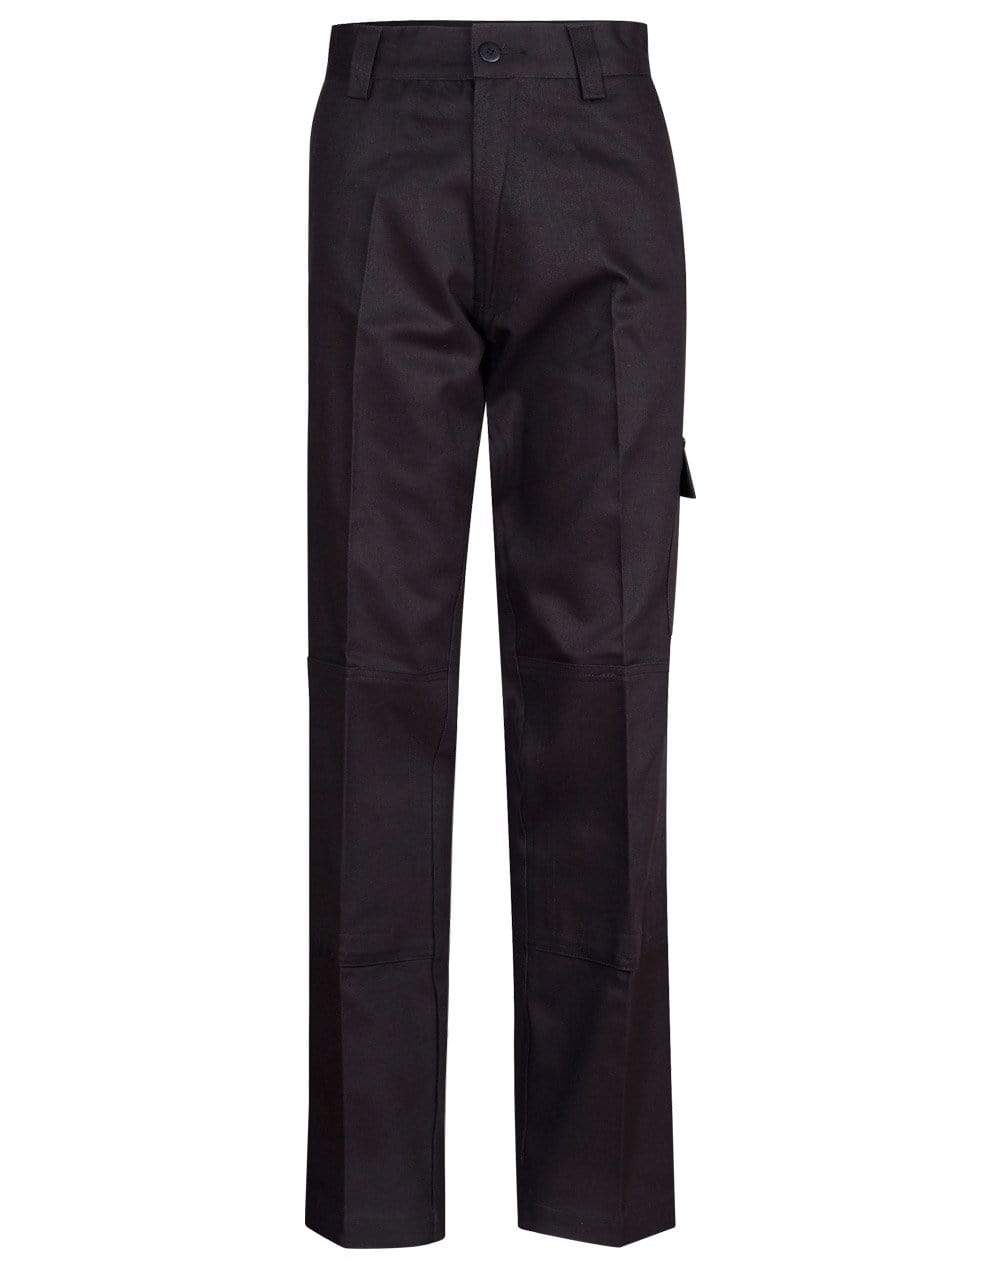 Men's Heavy Cotton Drill Cargo Pants WP03 Work Wear Australian Industrial Wear 77R Black 